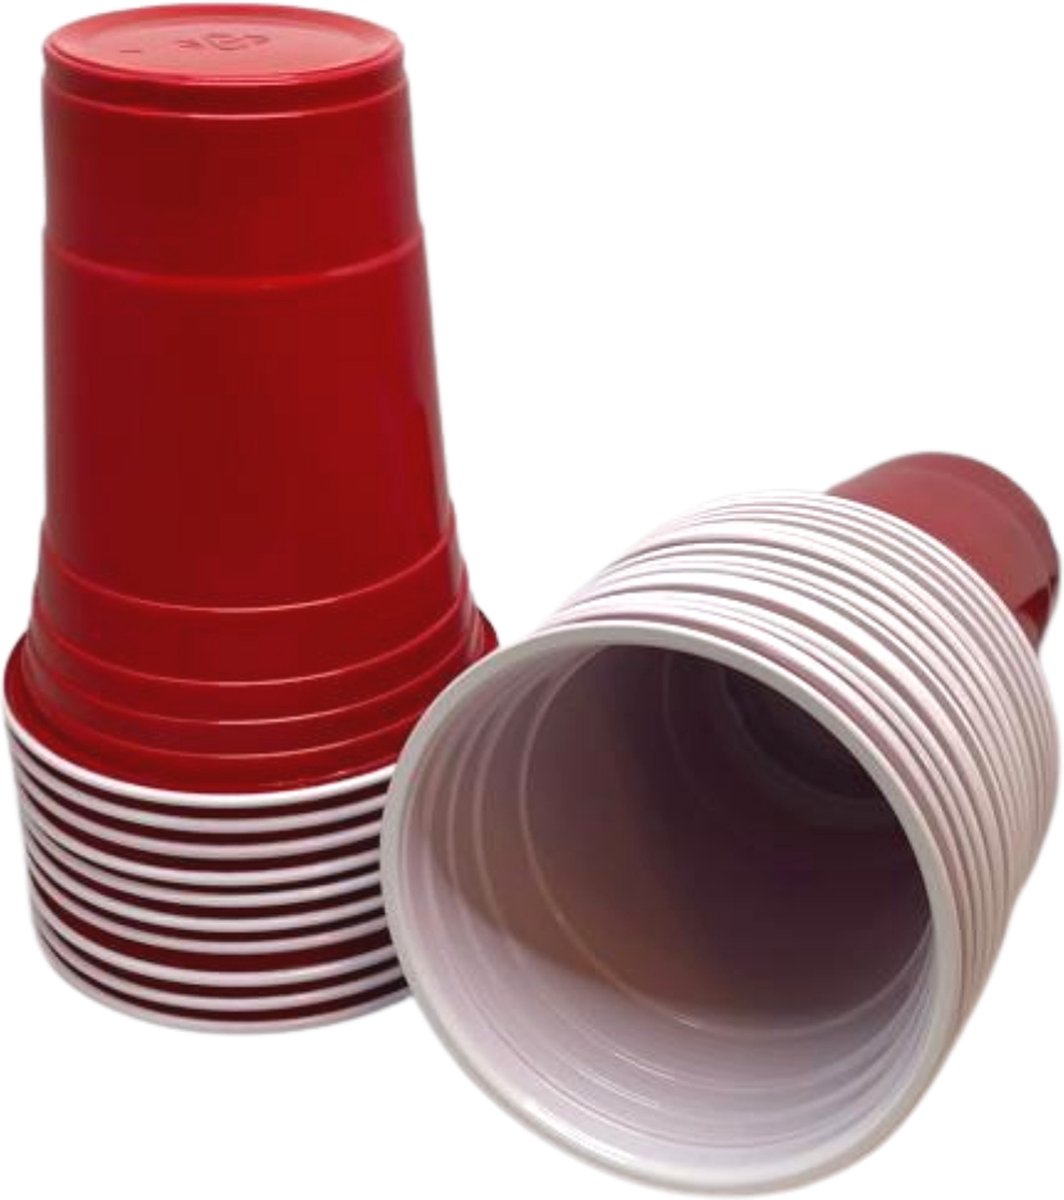 Red Cups - 25 stuks - 0.473 LITER - Perfect voor feestjes - Beerpong - Party cups - Red Cups American